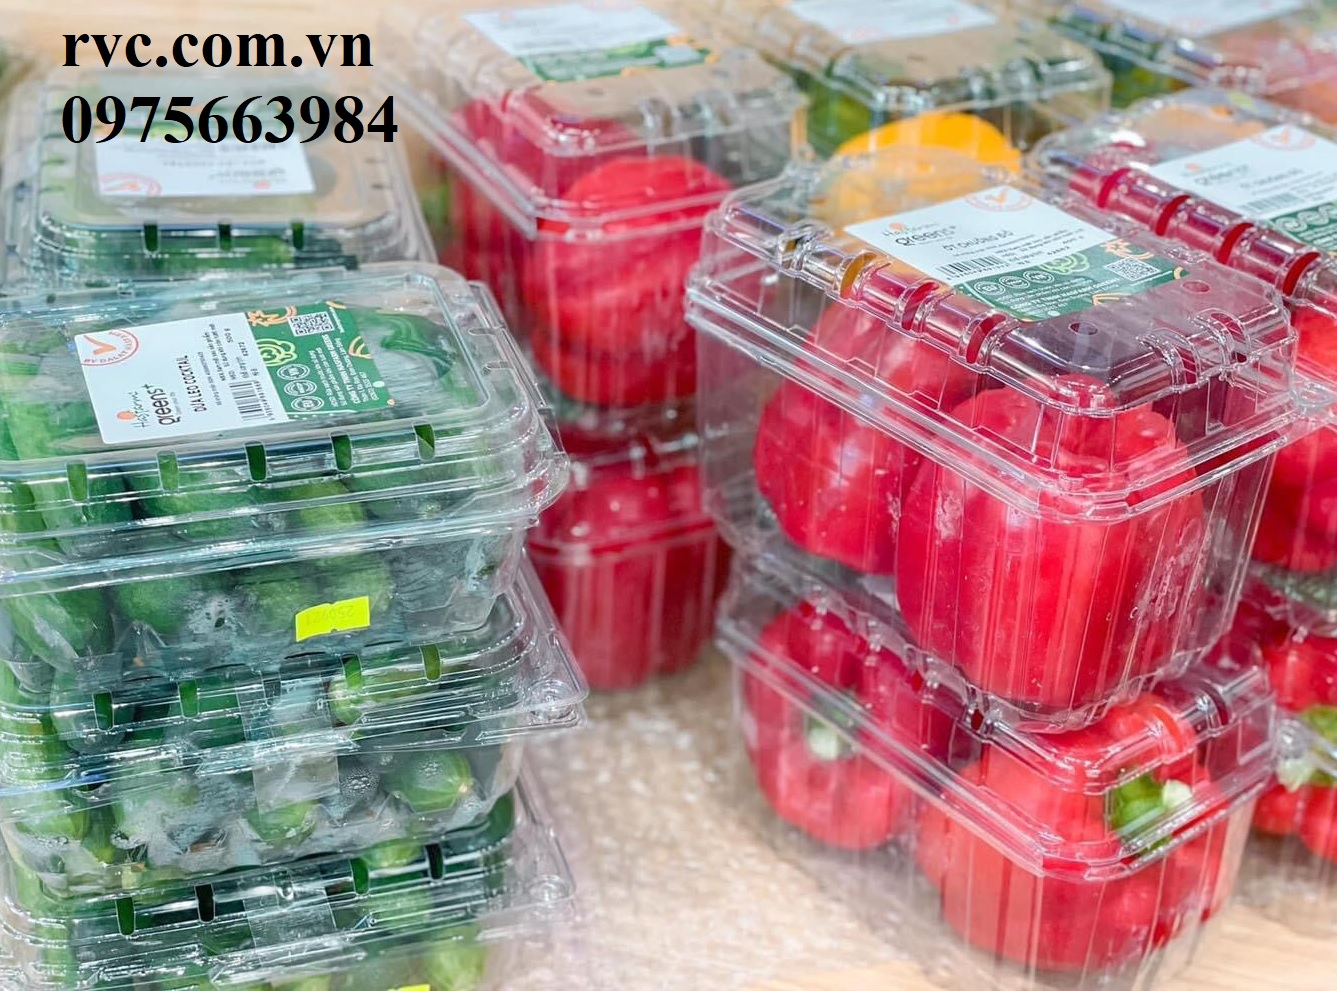 Phân phối và cung cấp giá sỉ hộp nhựa đựng nông sản trên toàn quốc.